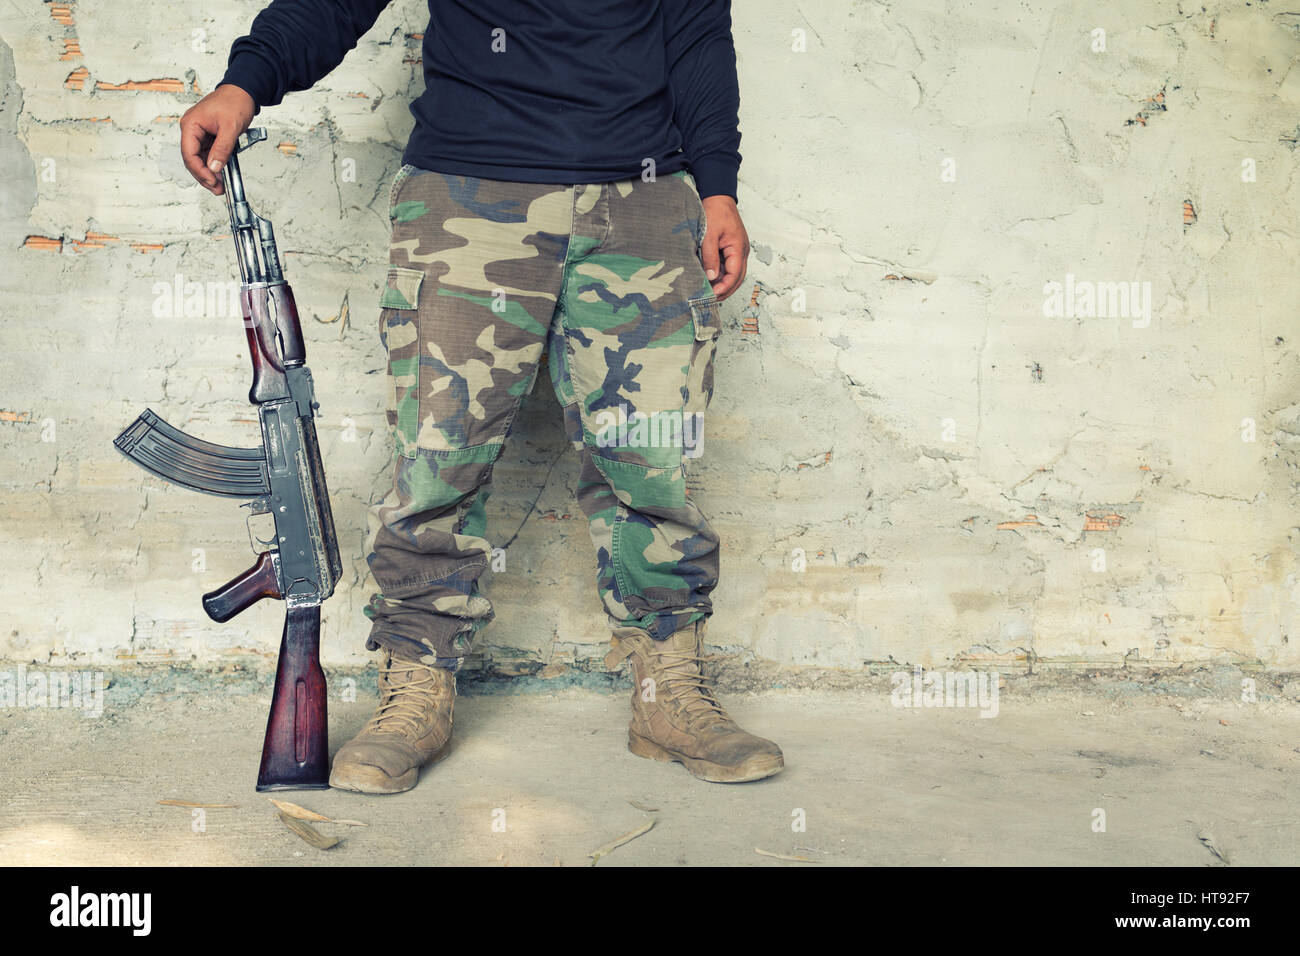 Attente de l'homme vieille kalashnikov mitraillette AK-47 Banque D'Images